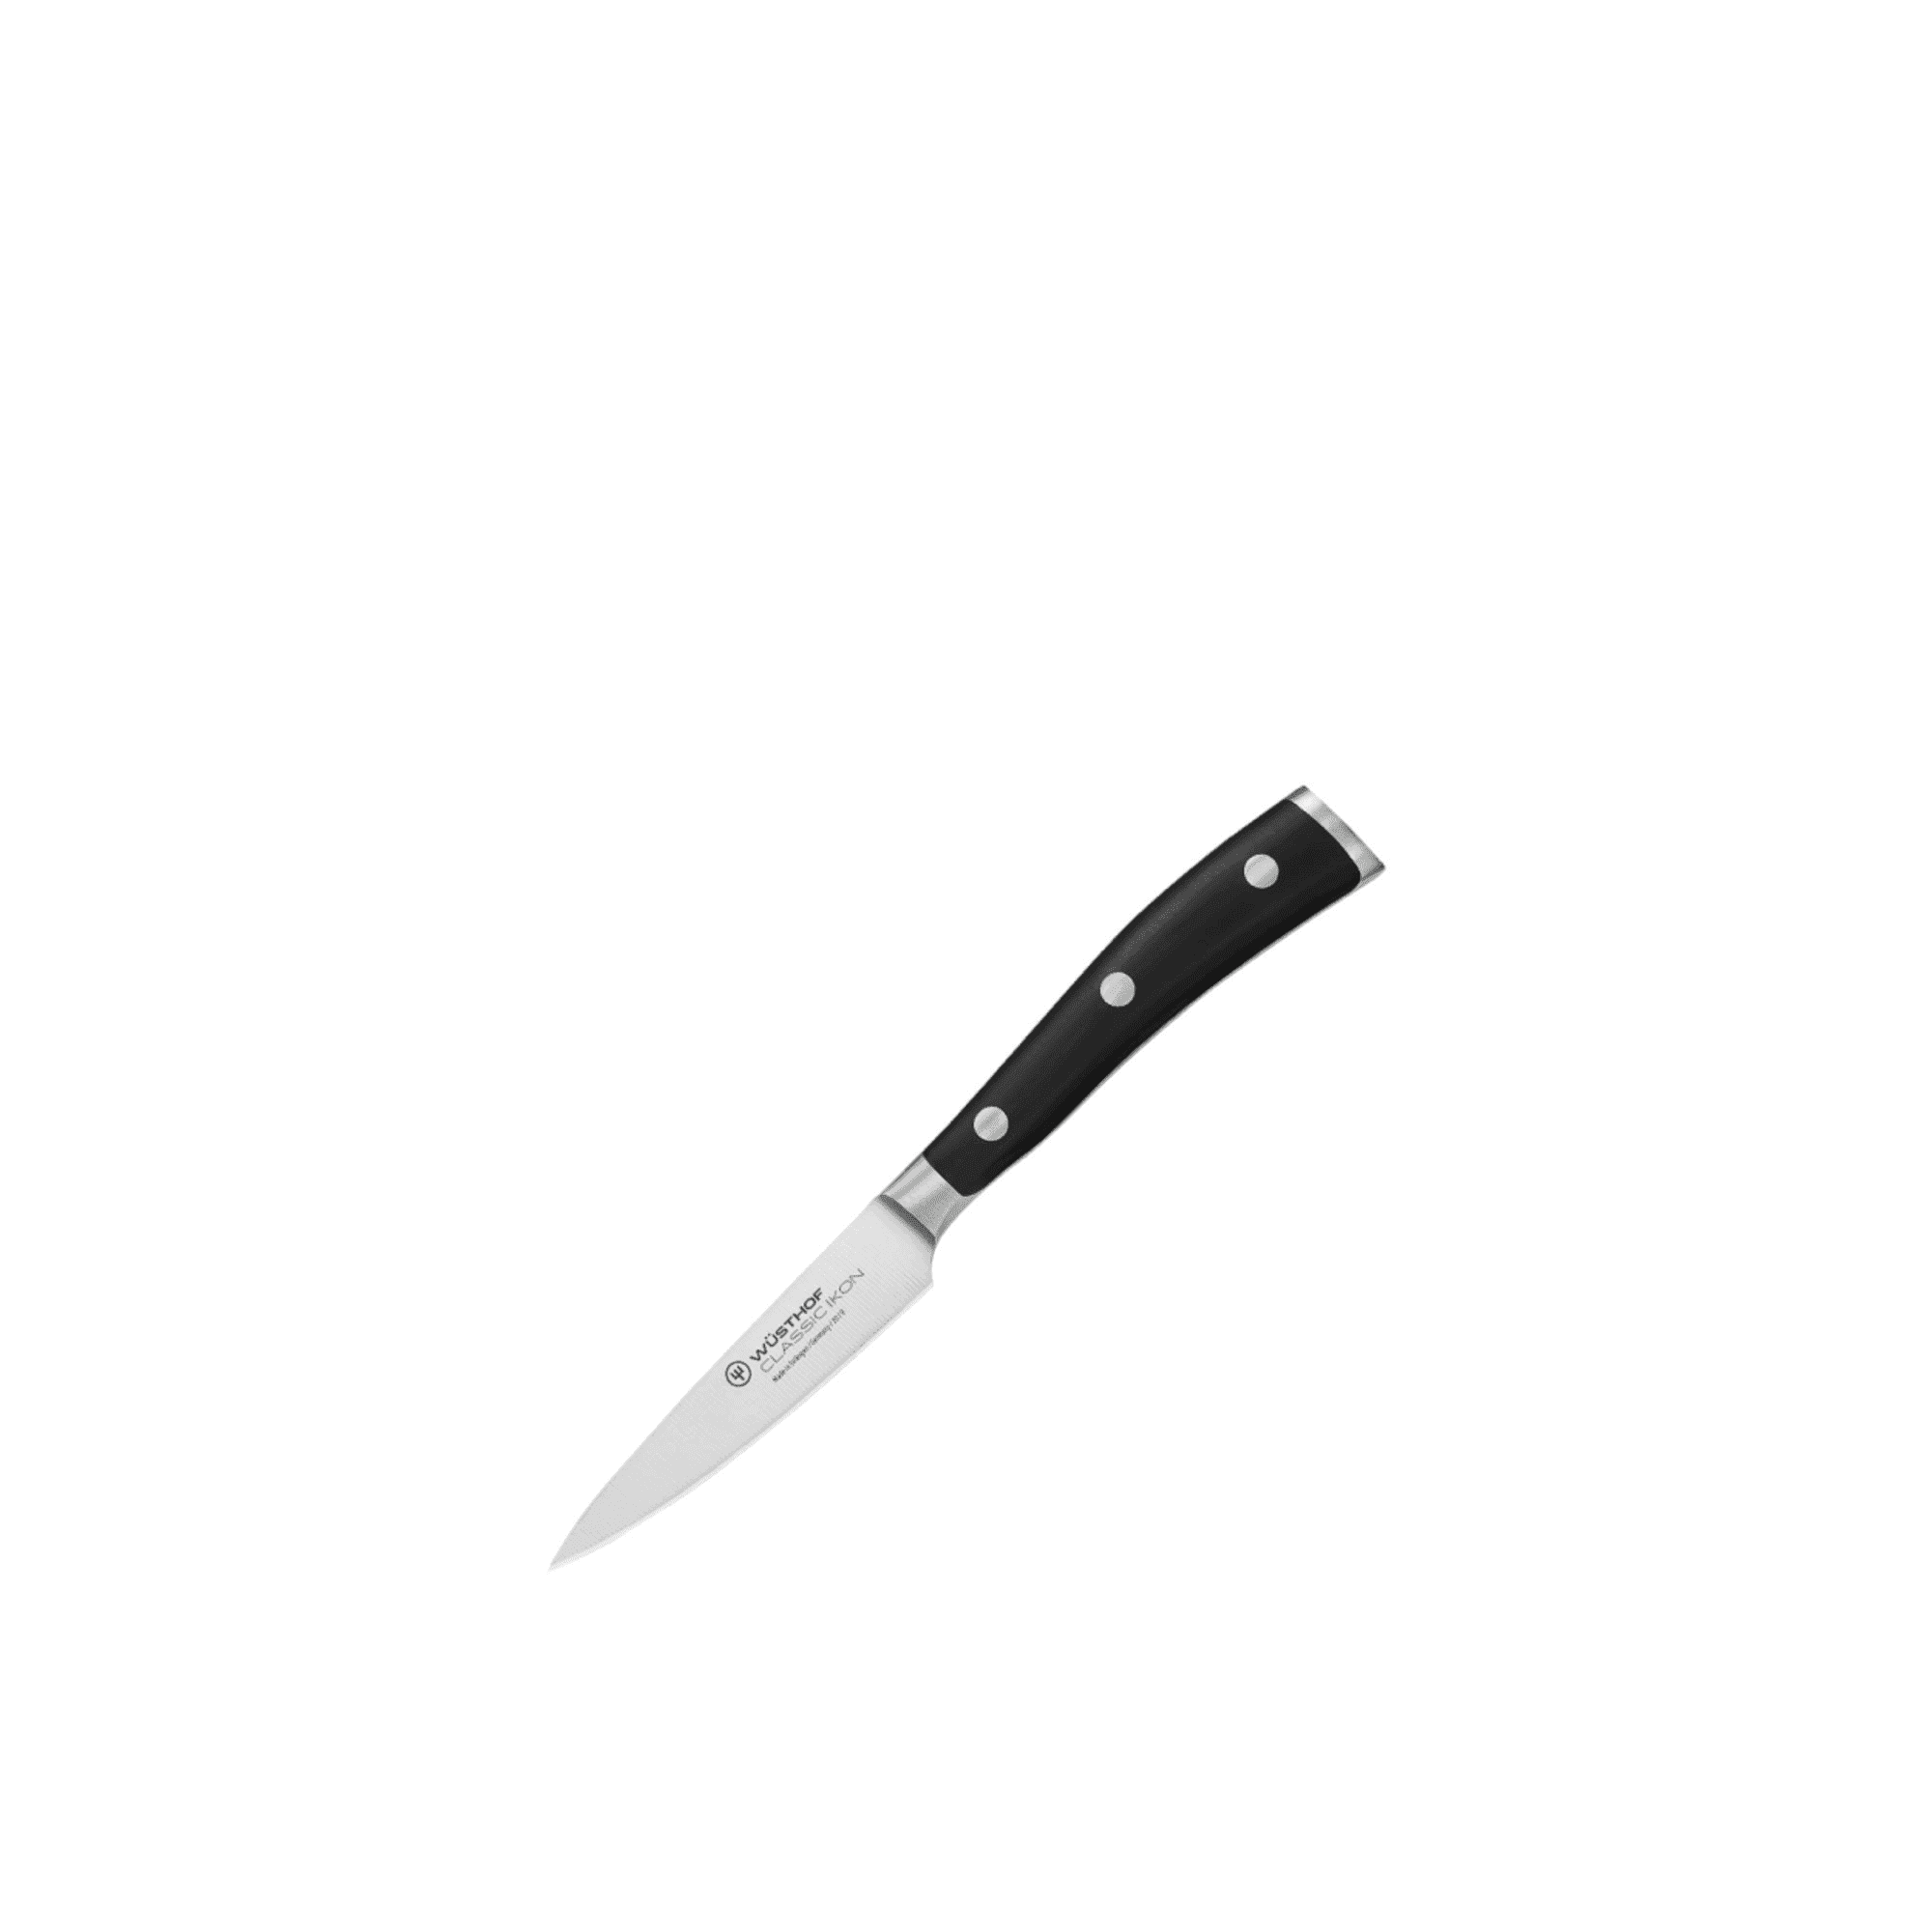 Wusthof Classic Ikon 3pc Knife Set Image 4